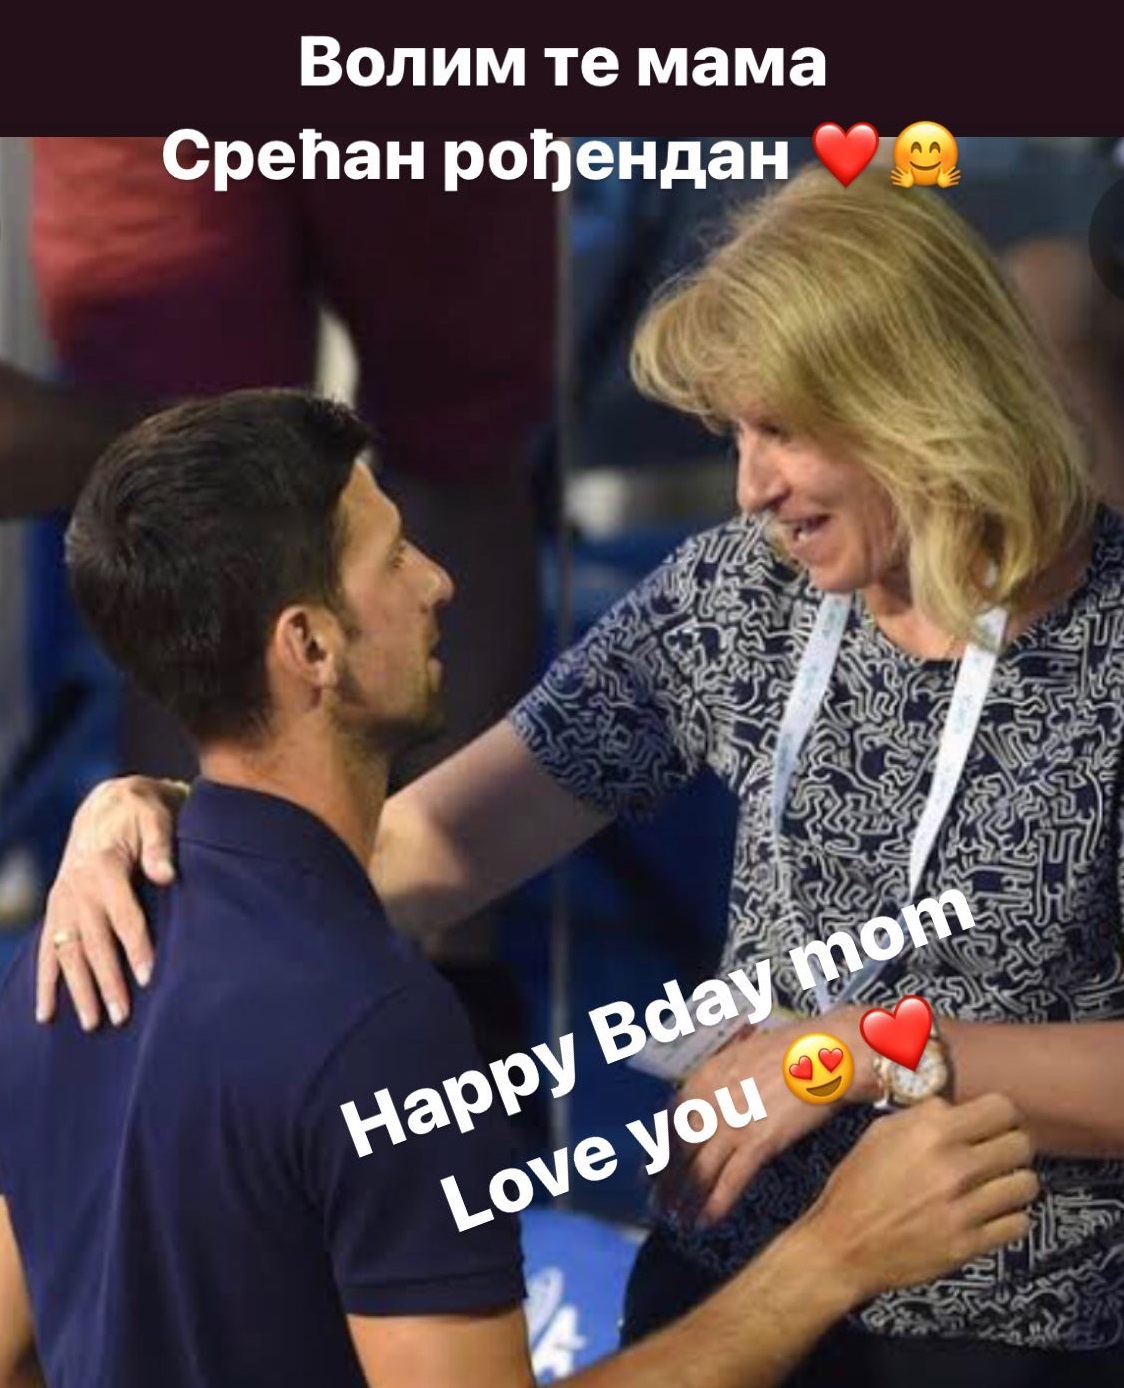 Теннисист Новак Джокович отметил важную семейную дату